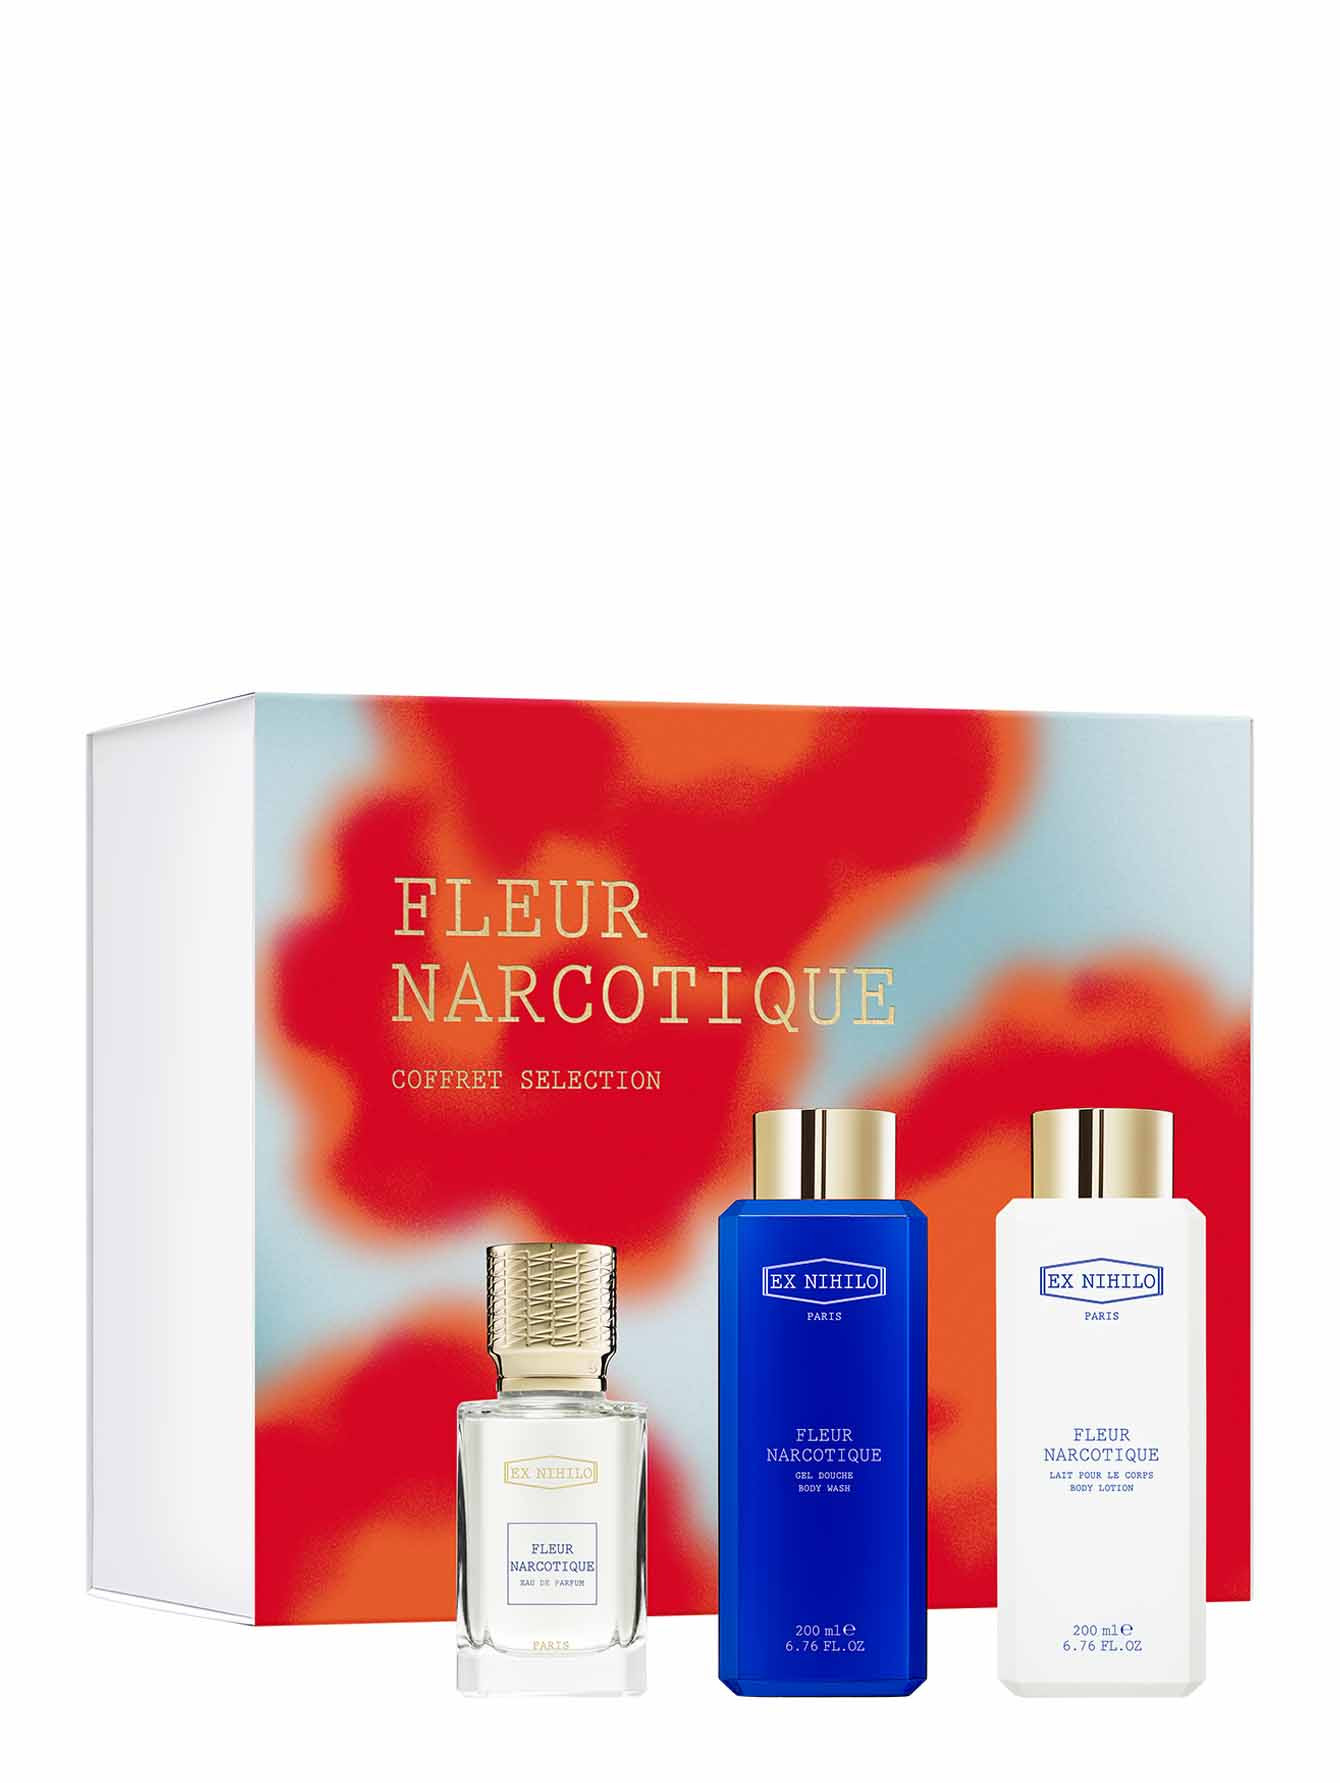 Набор Coffret Selection Fleur Narcotique: парфюмерная вода, гель для душа и лосьон для тела, 50 мл + 200 мл + 200 мл - Общий вид